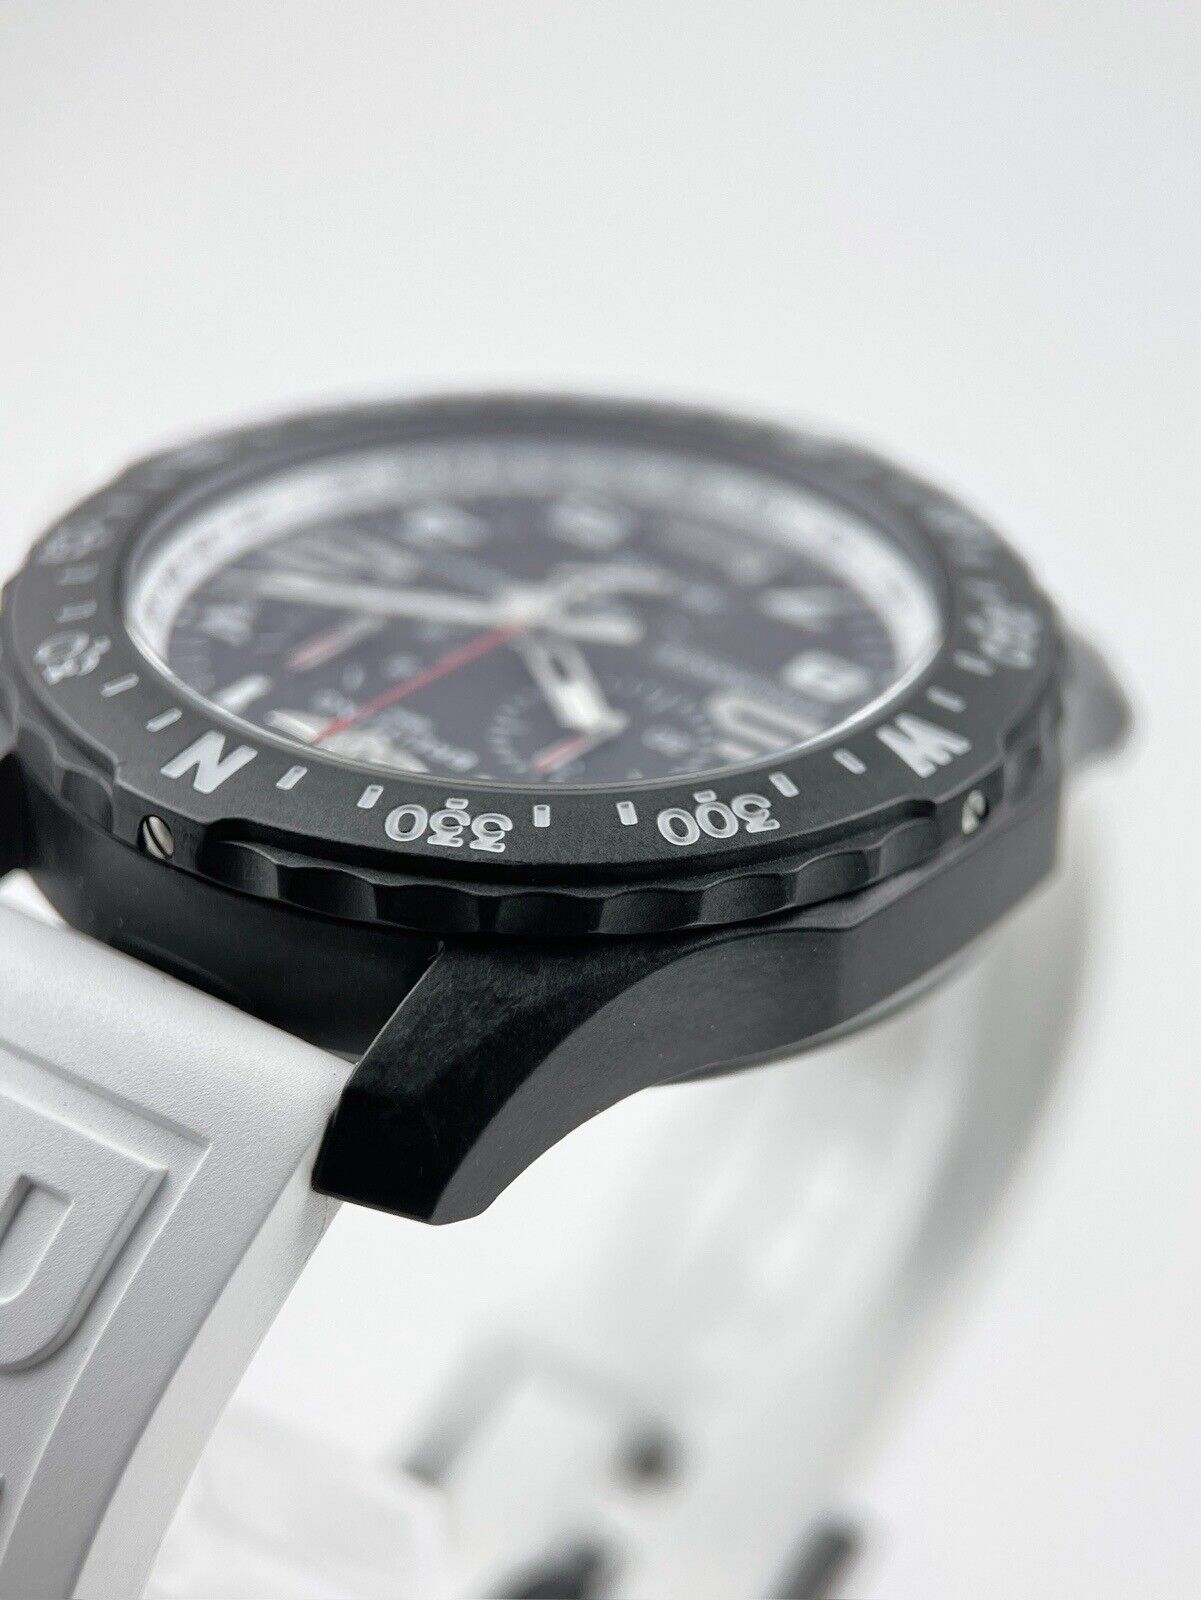 Breitling Endurance Pro Black Dial Quartz Watch 44mm - X82310 Carbon Case - B/P